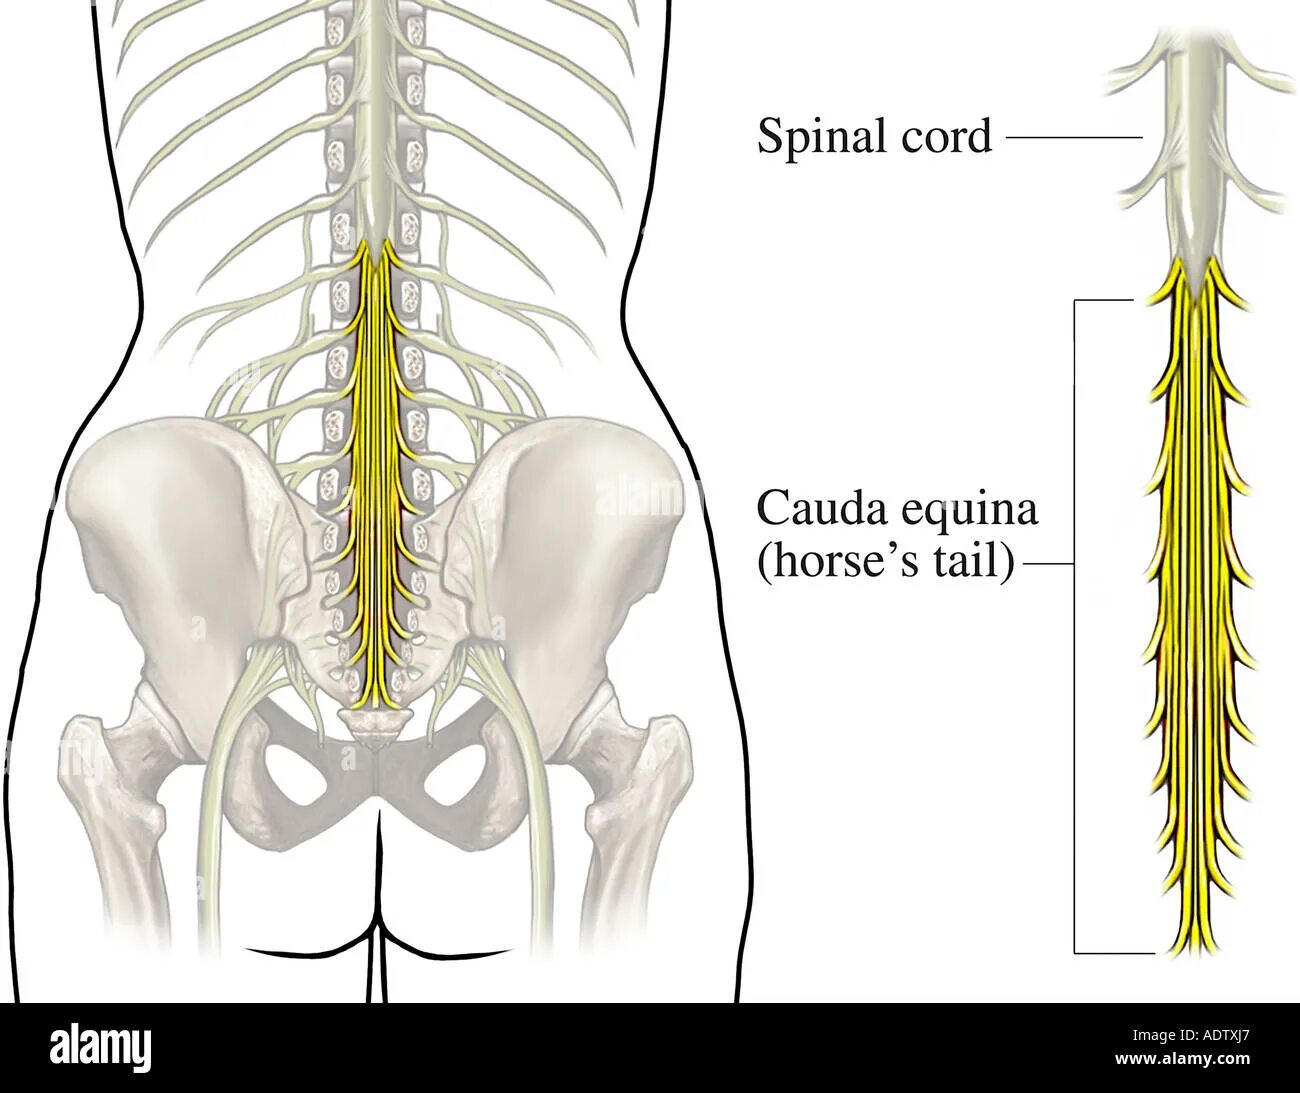 Пояснично-крестцовый отдел спинного мозга. Седалищный нерв и конский хвост. Конский хвост кауда эквина. Спинной мозг конский хвост седалищный нерв. Пояснично крестцовый отдел операция на позвоночнике